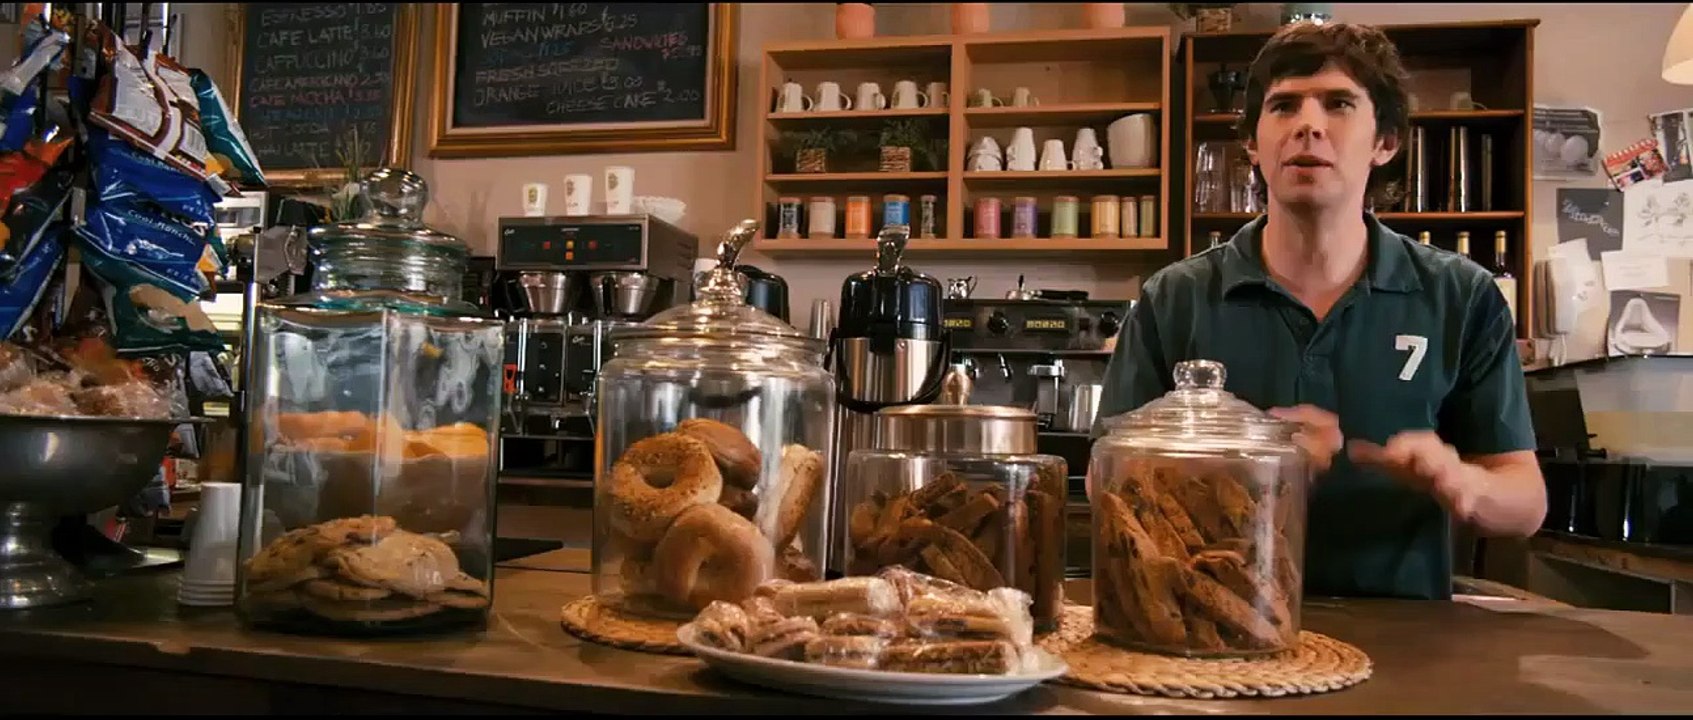 Café - Wo das Leben sich trifft | movie | 2011 | Official Trailer